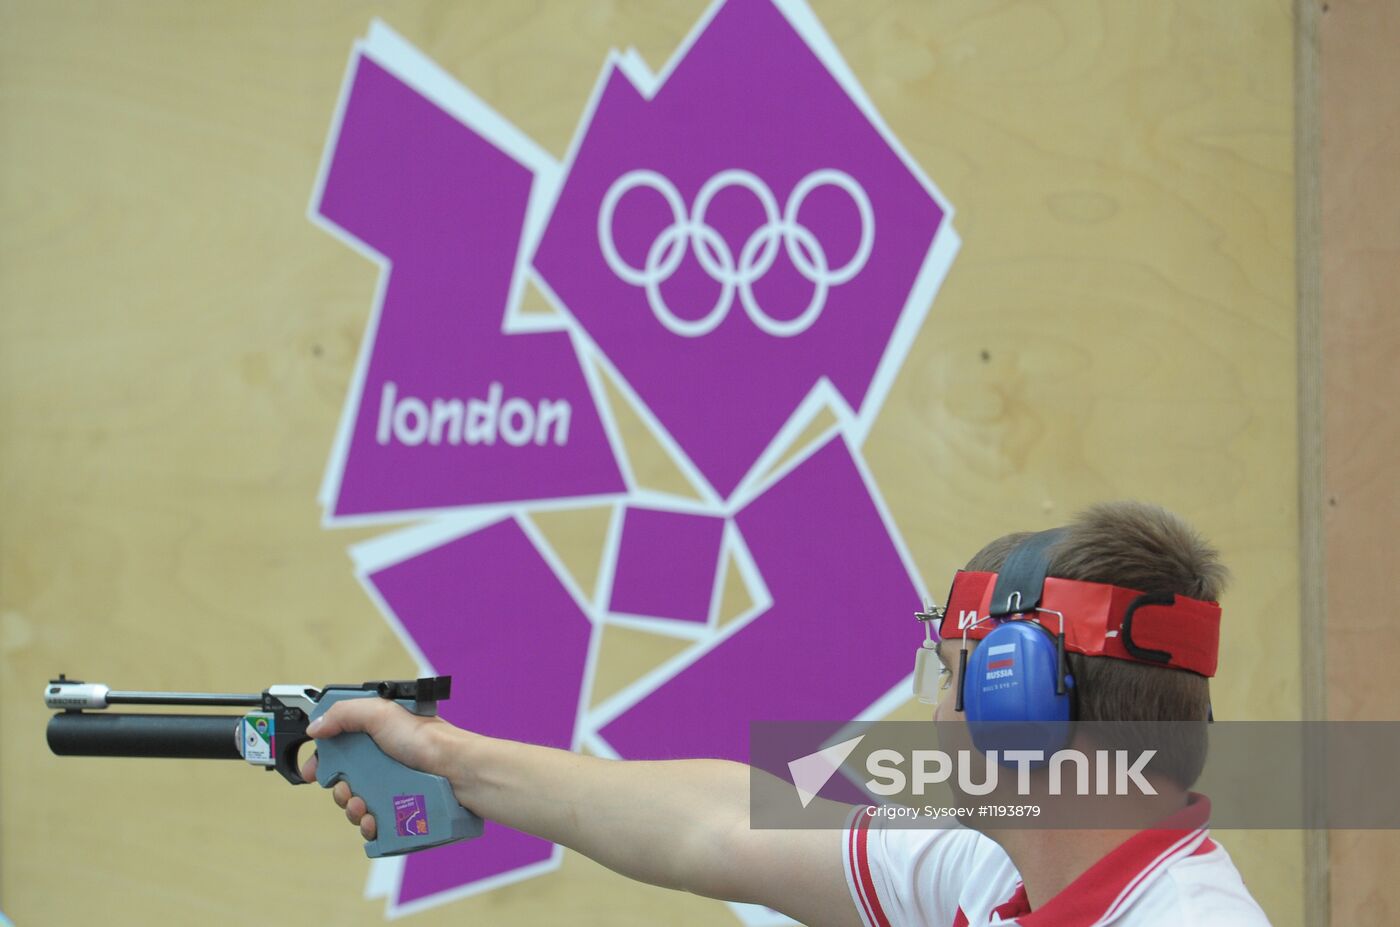 2012 Summer Olympics. Shooting. Air pistol. Men